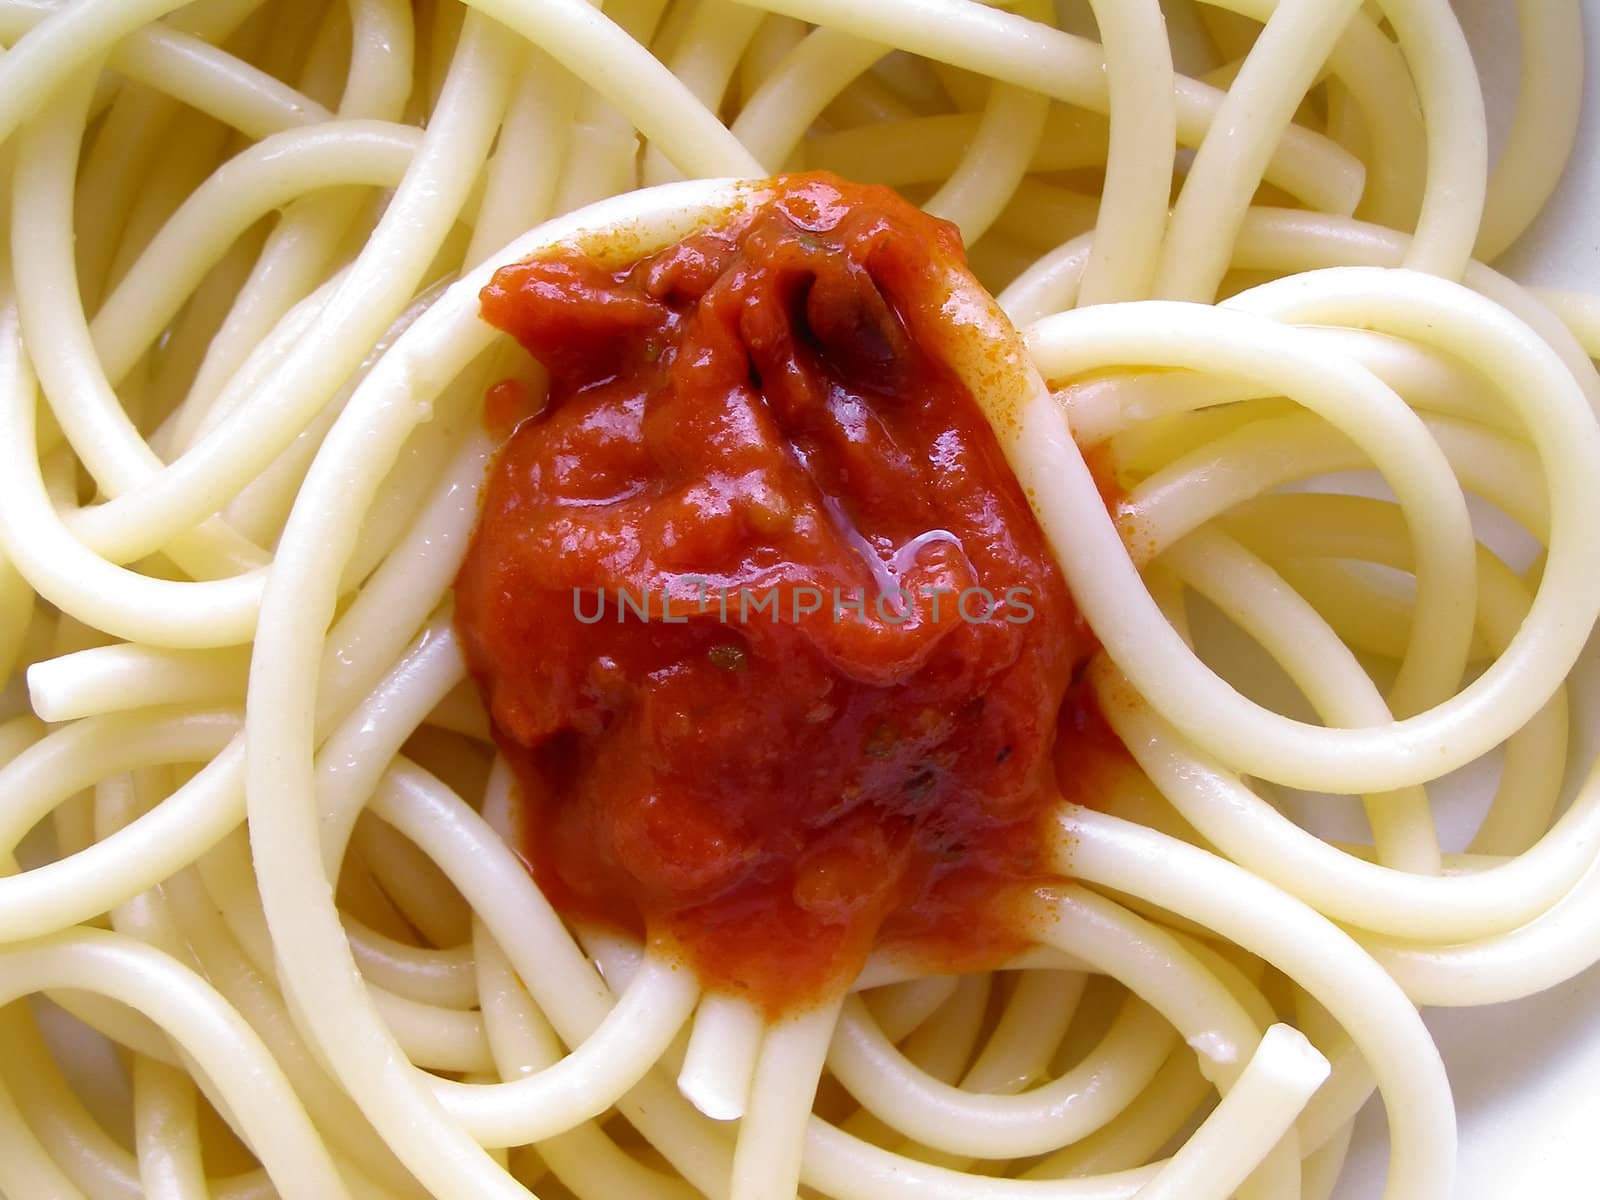 Italian spaghetti pasta